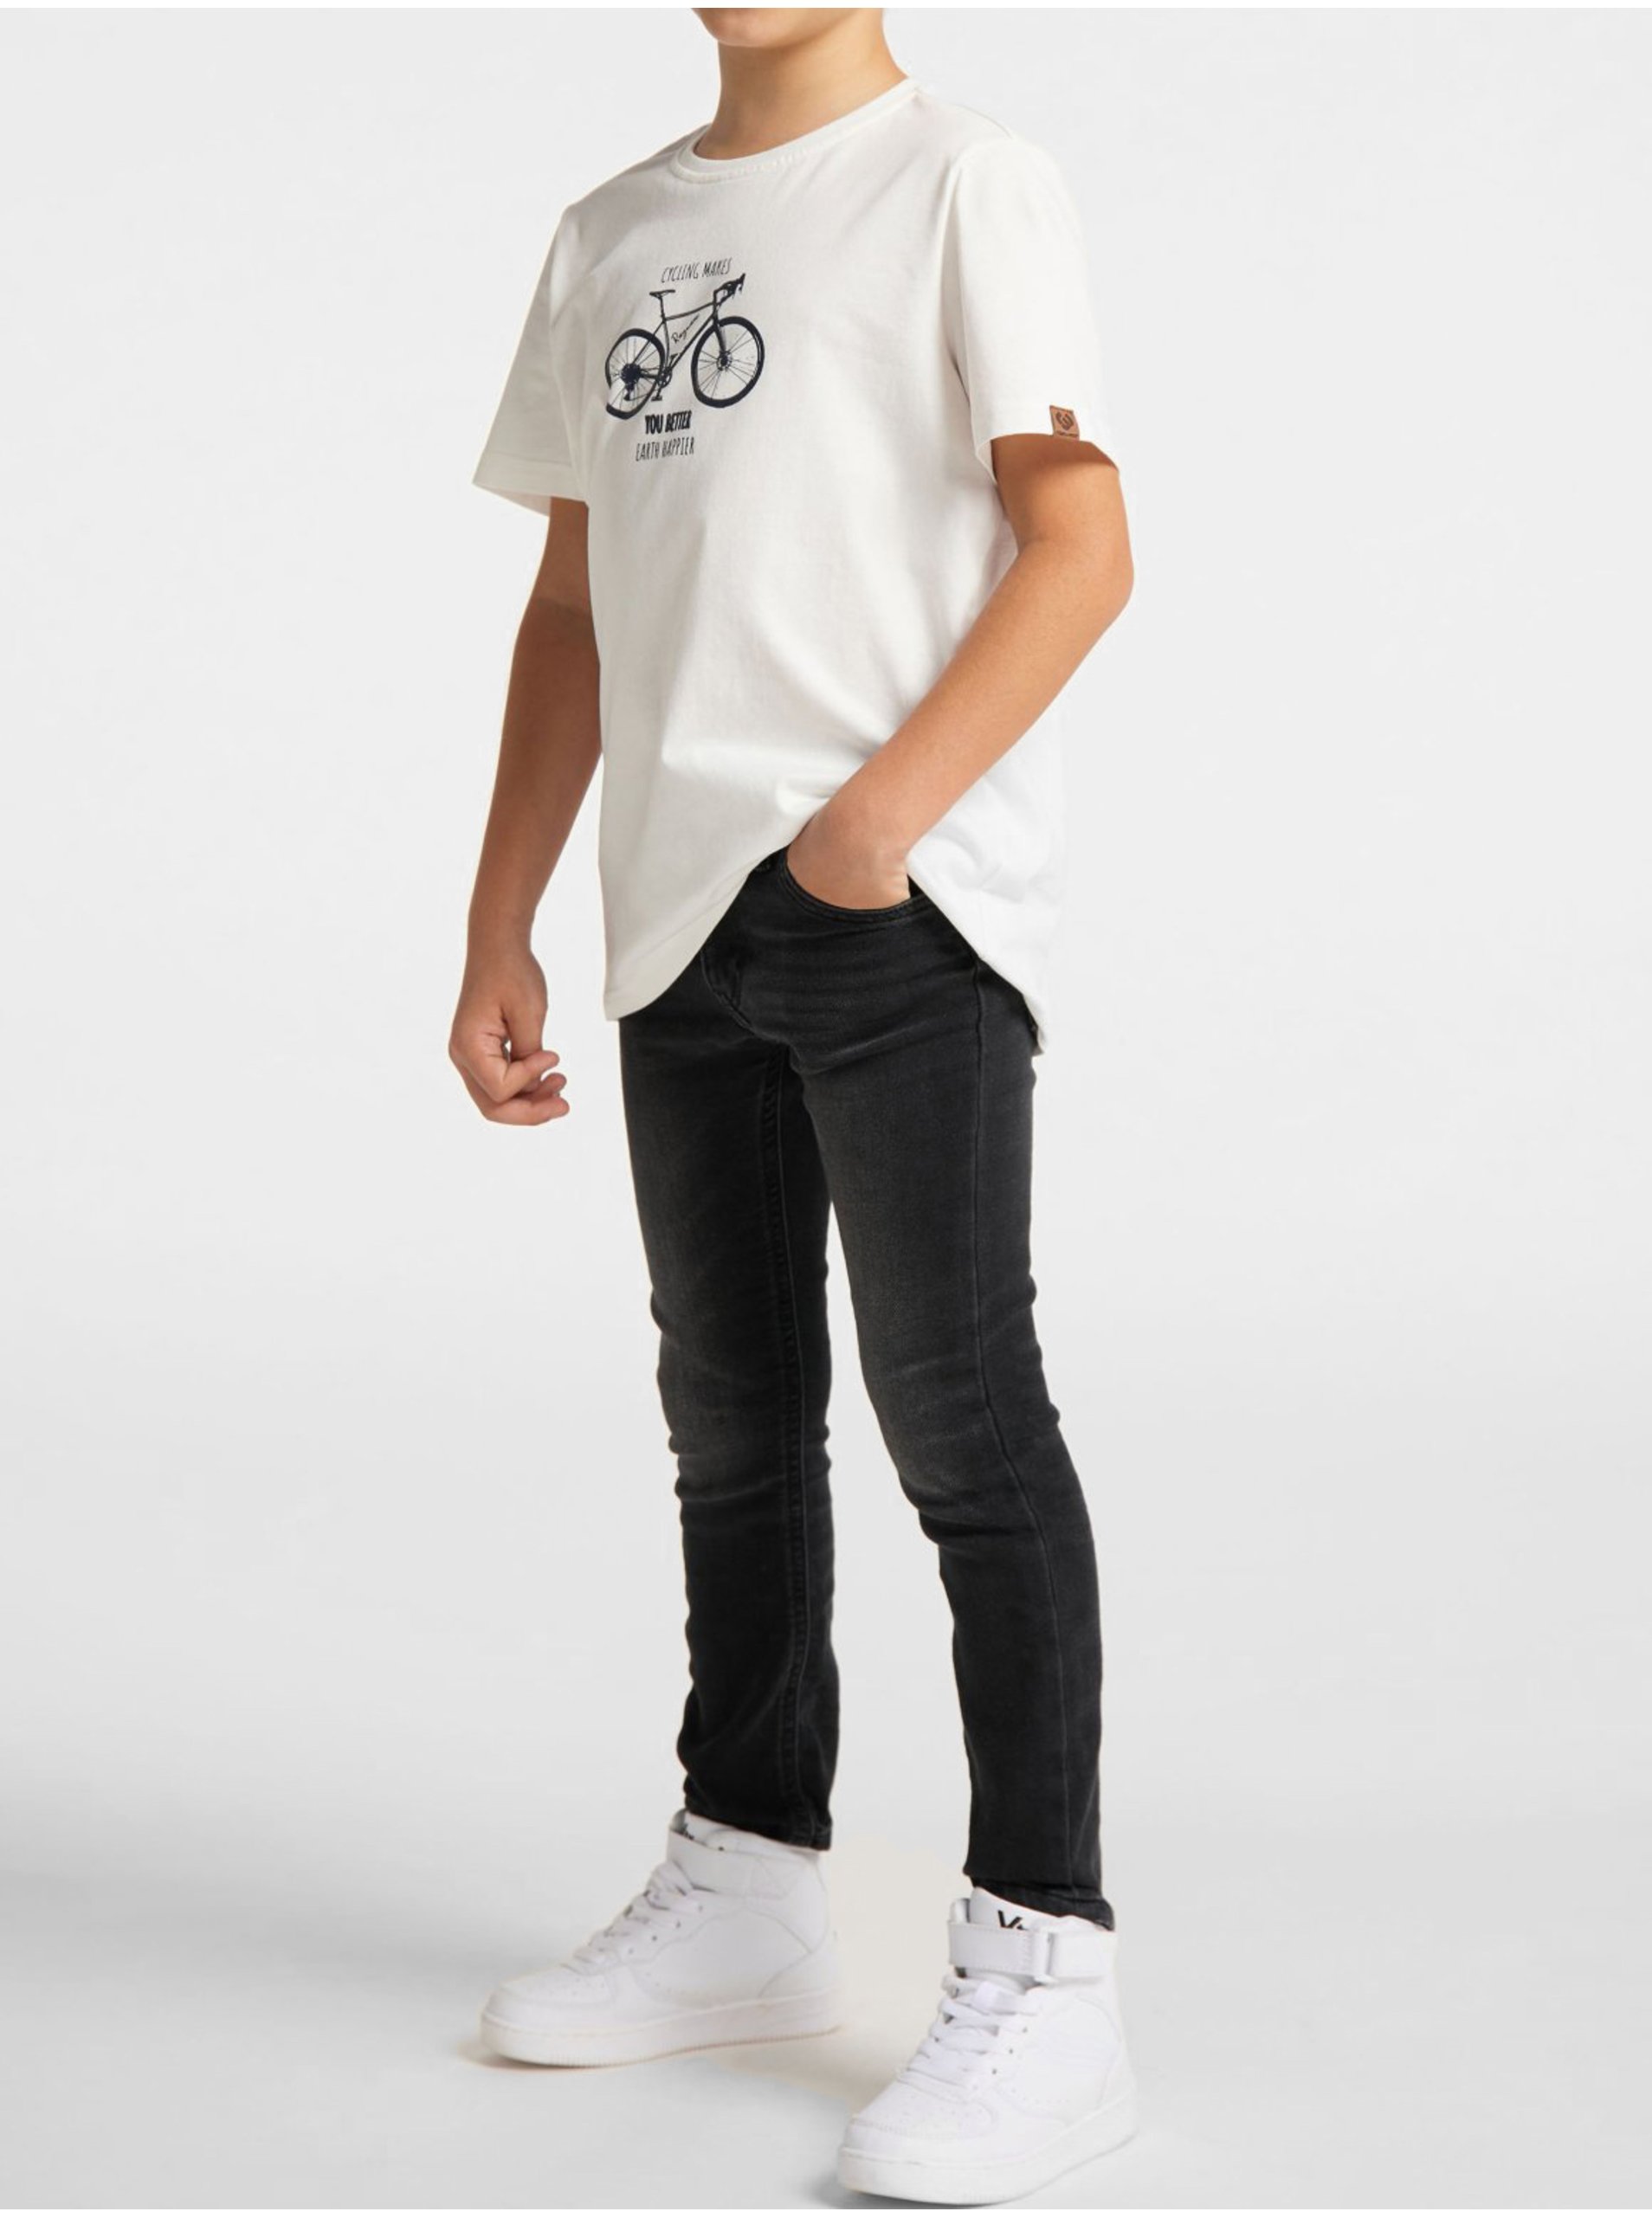 Lacno Biele chlapčenské tričko Ragwear Cyco